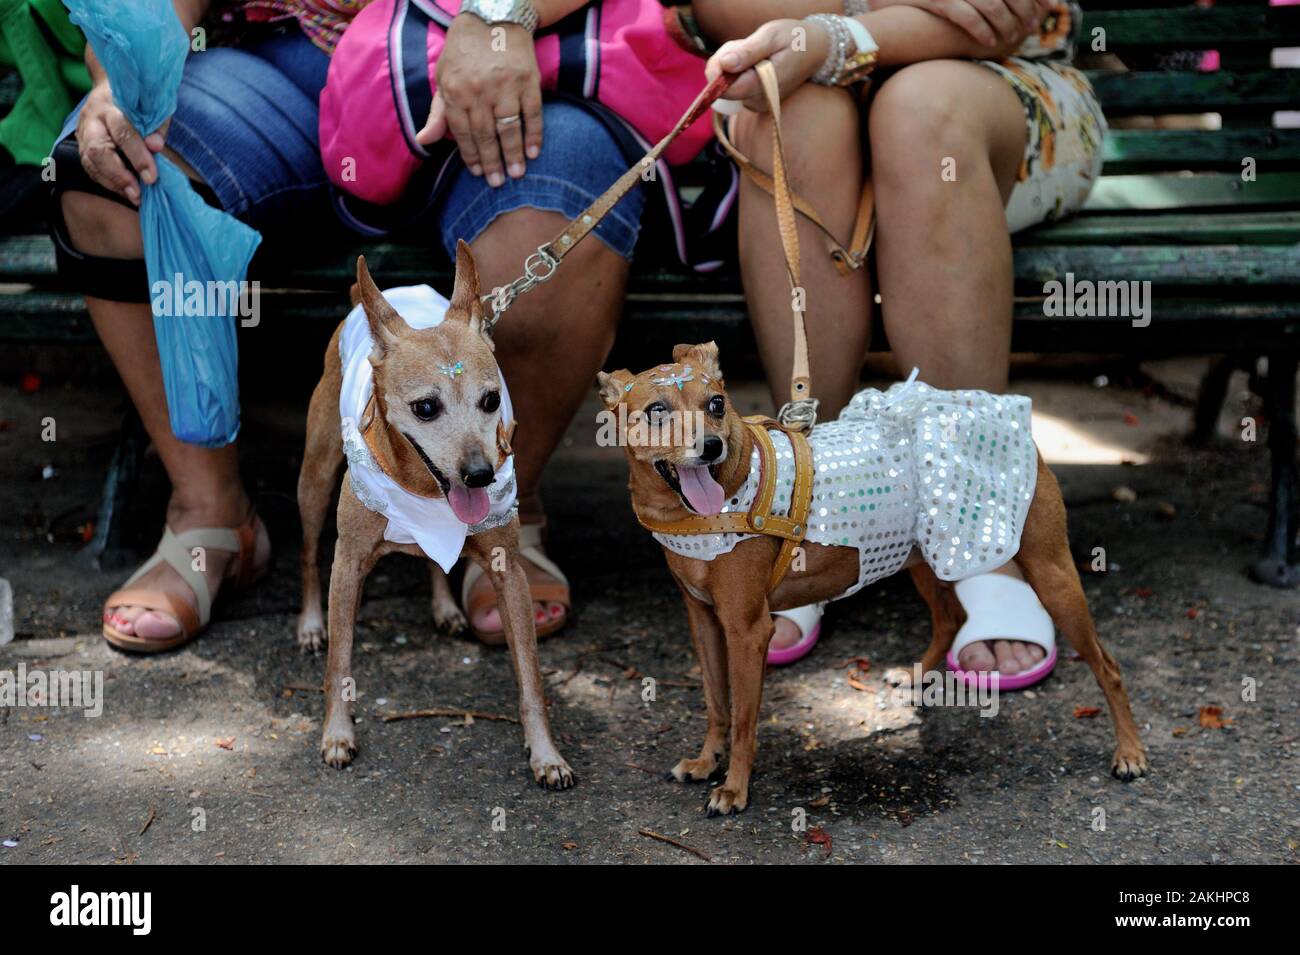 Brésil - février 23, 2019 : les chiens en costume d'entrer dans l'esprit du carnaval au cours de l'assemblée annuelle tenue à parti animaux de Tijuca, à Rio de Janeiro, zone nord. Banque D'Images